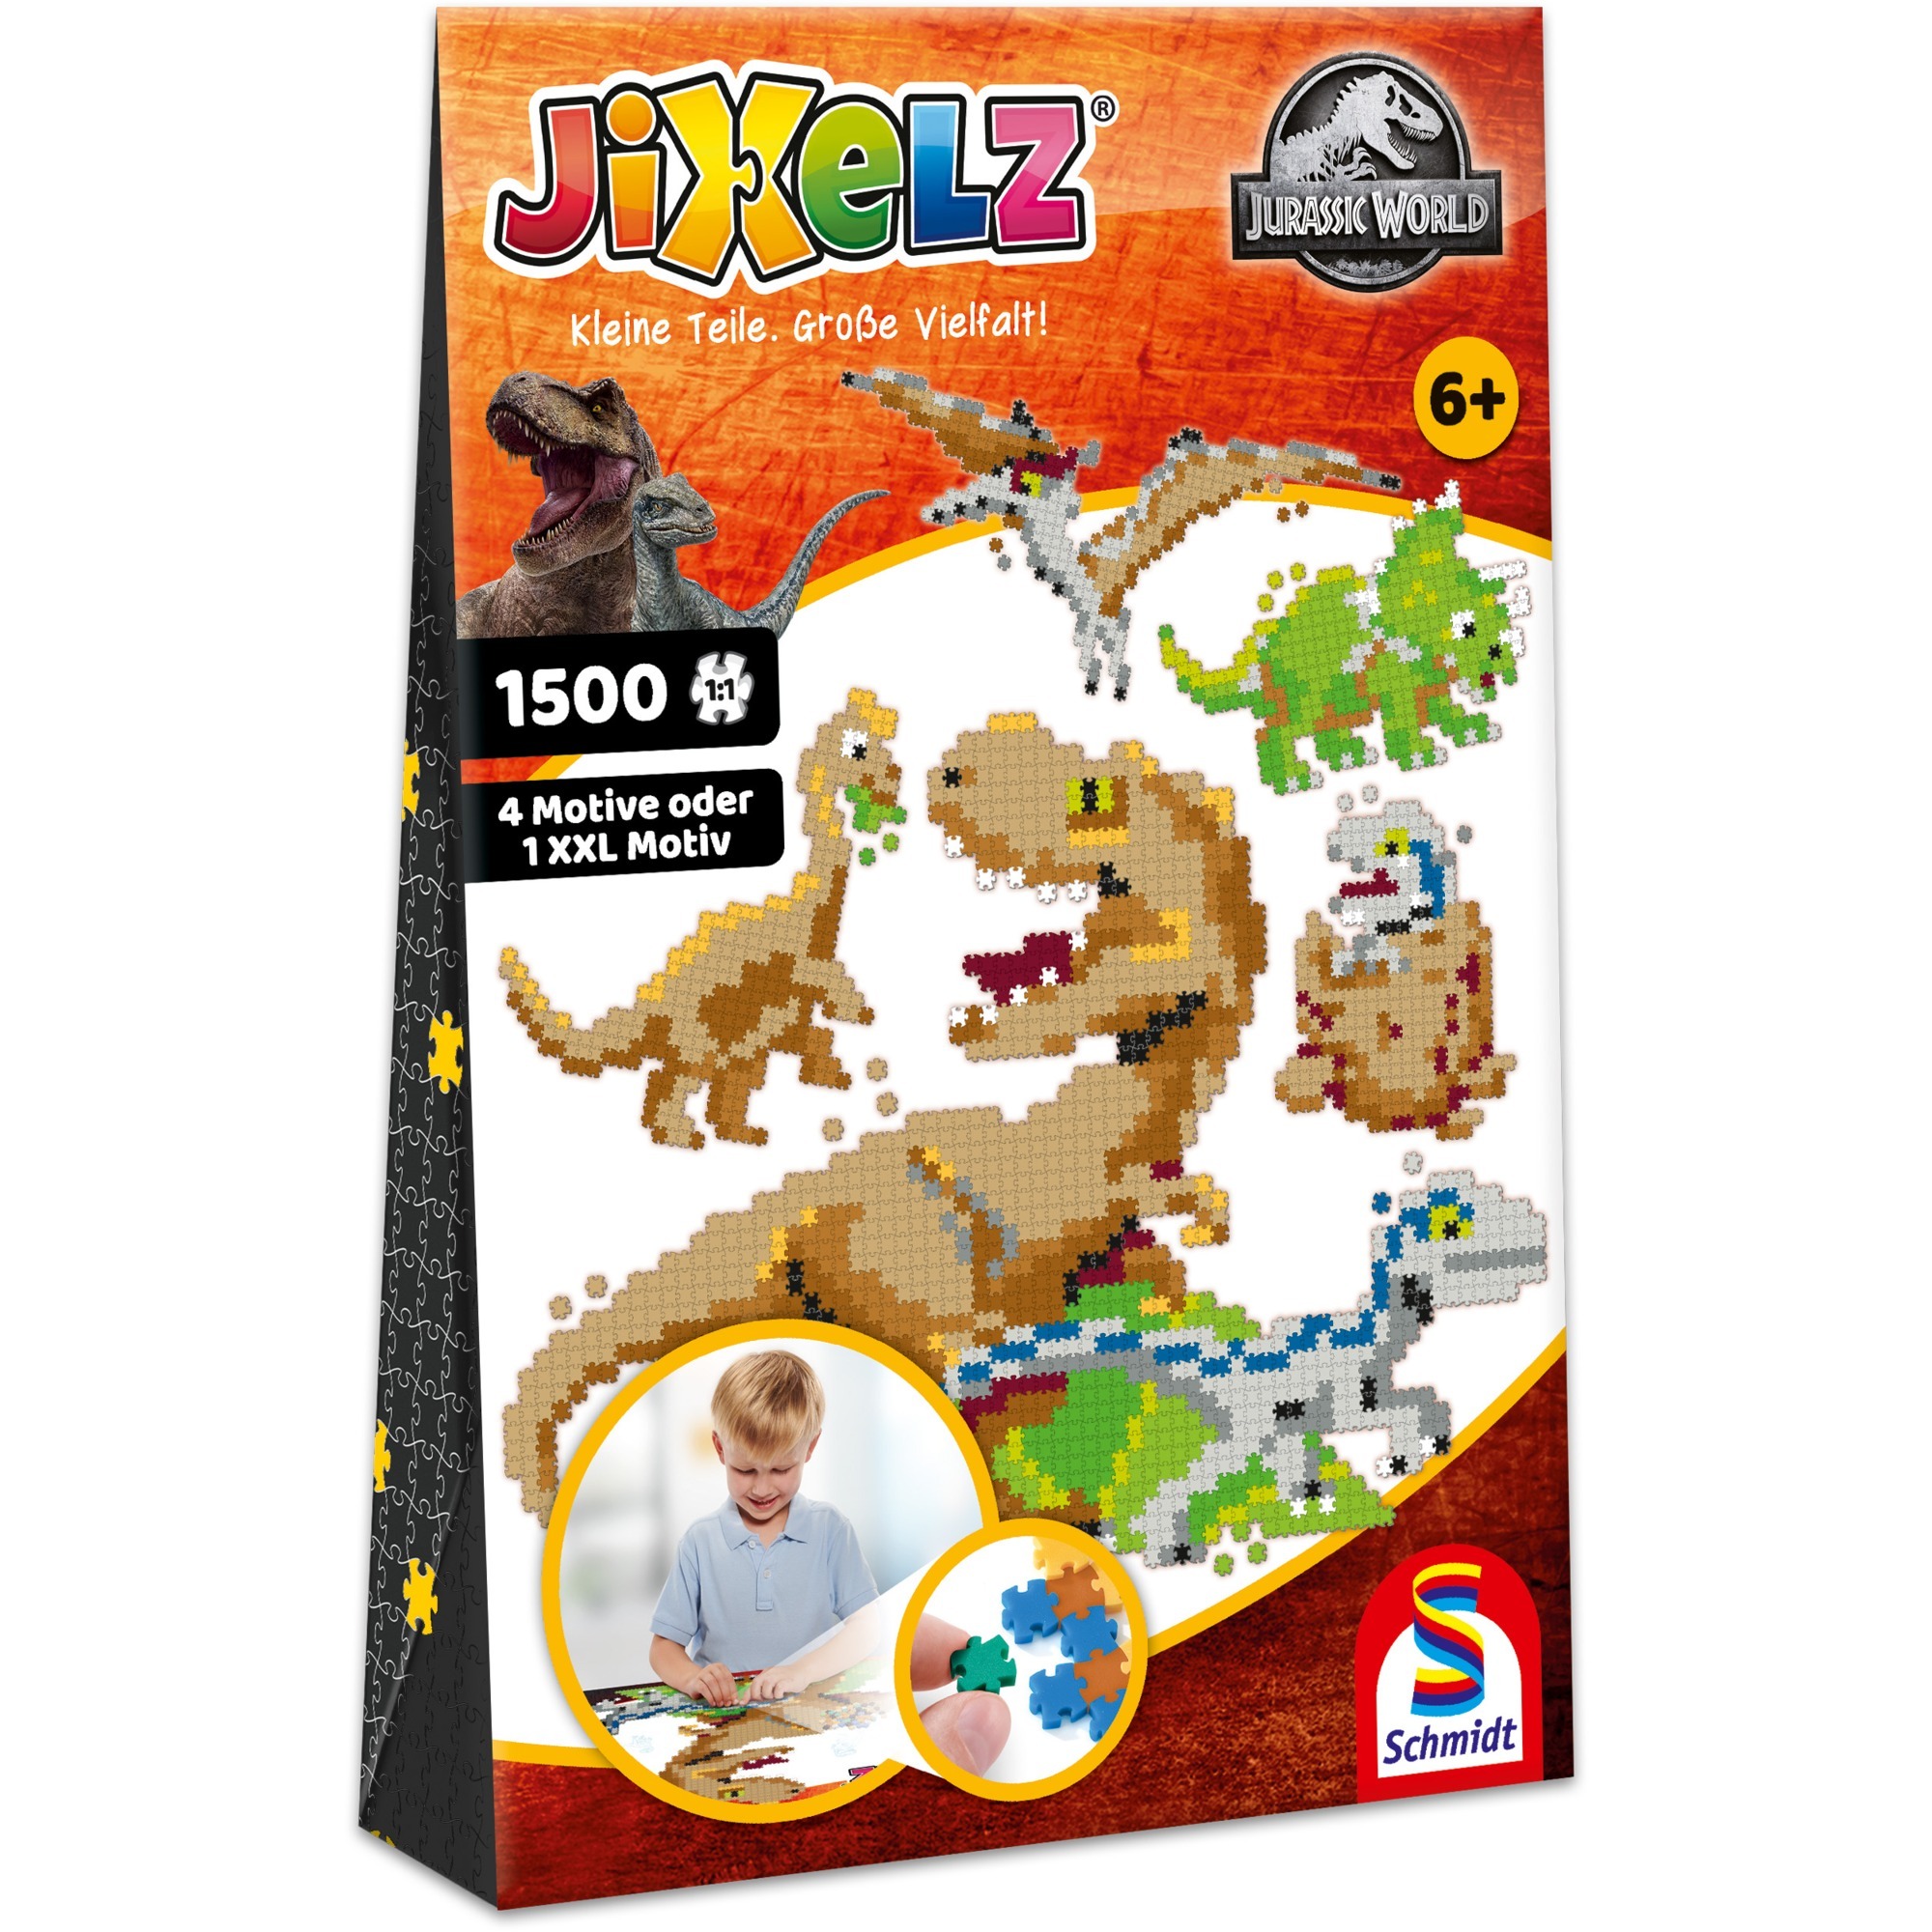 Image of Alternate - JIXELZ Jurassic World, Basteln online einkaufen bei Alternate